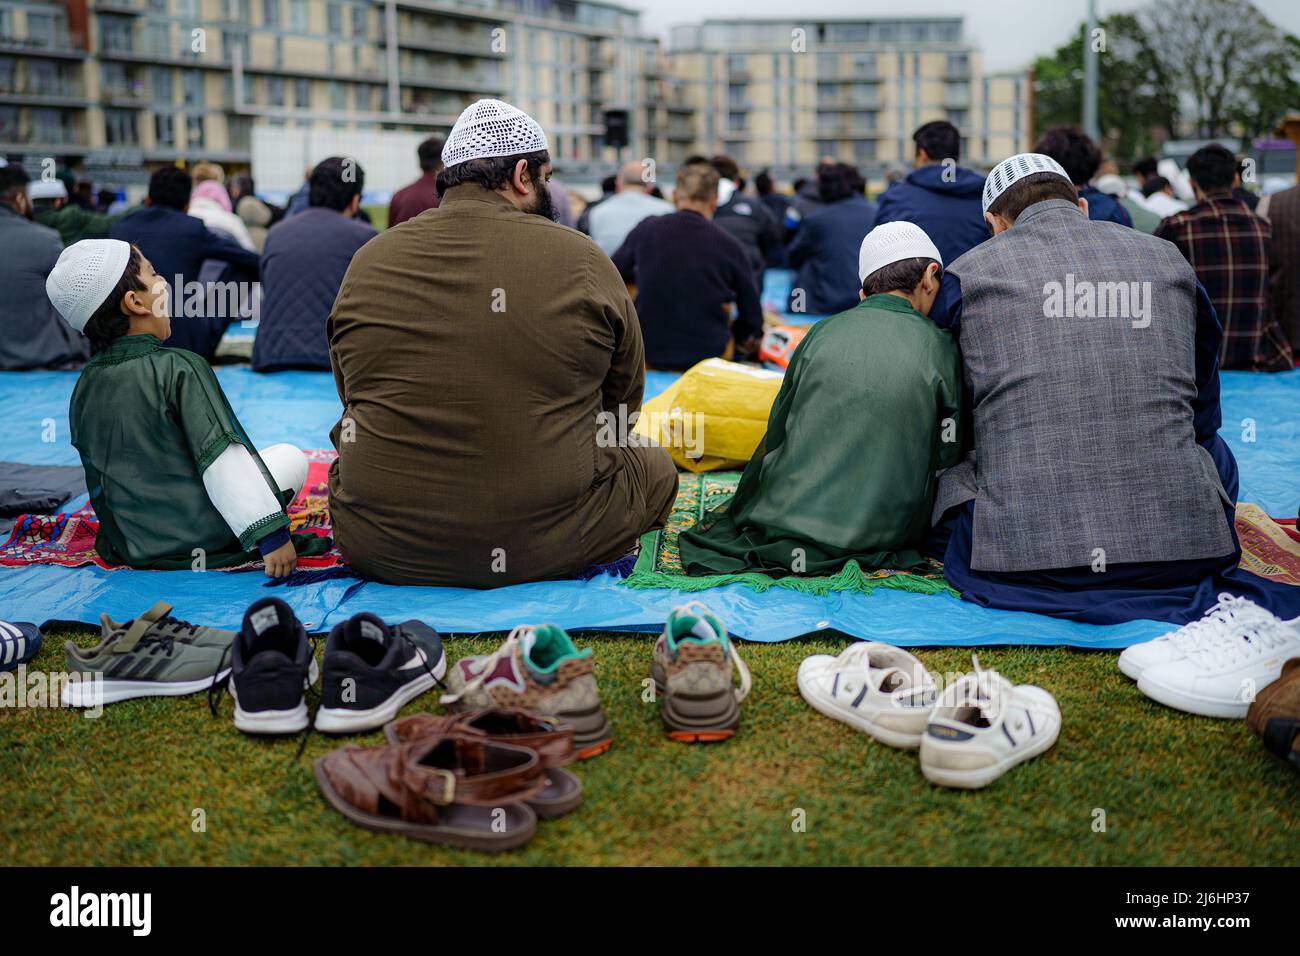 Während der Sunna versammeln sich die Menschen im Eid-Gebet, während sie im Freien im Big Eid Salah in Bristol beten: Eid al-Fitr 2022, als der heilige Monat Ramadan zu Ende geht und Muslime Eid al-Fitr feiern. Bilddatum: Montag, 2. Mai 2022. Stockfoto